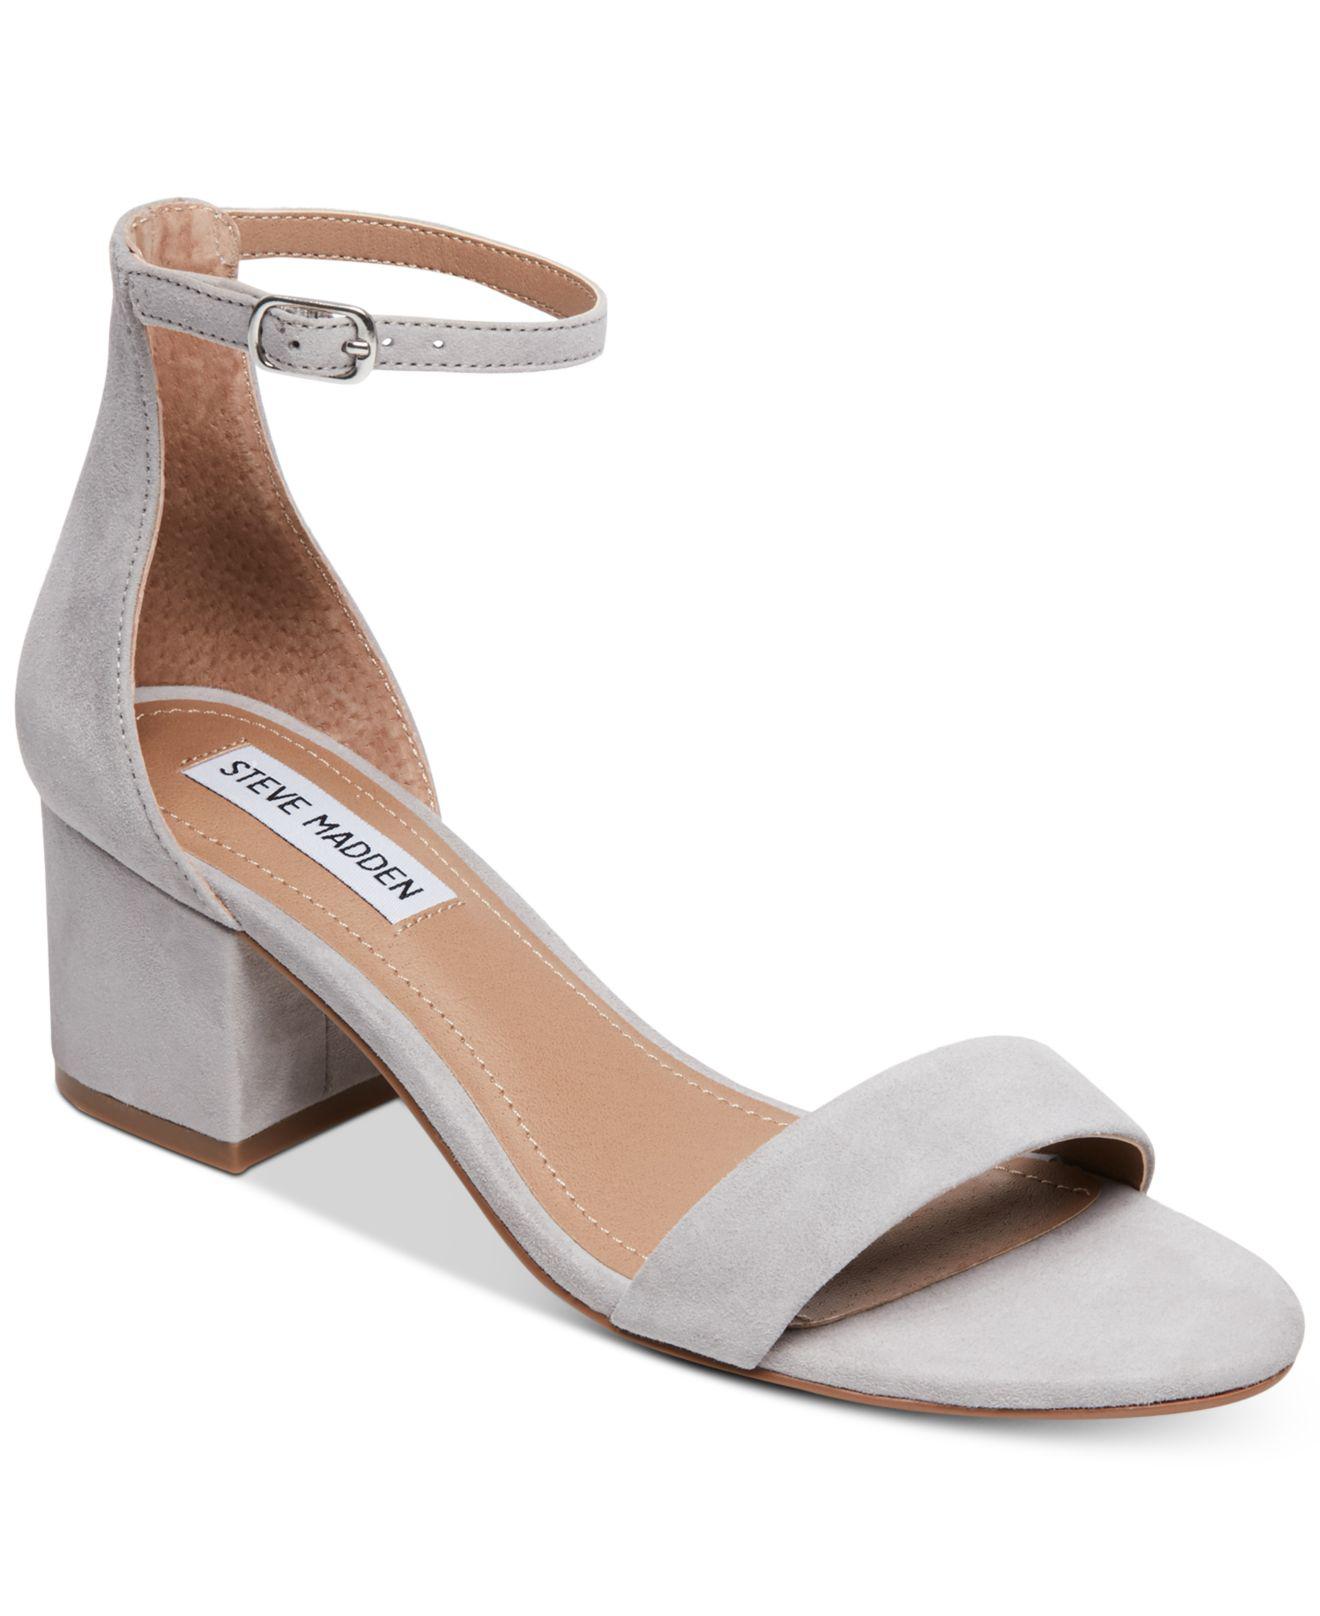 Steve Madden Irenee Two-piece Block-heel Sandals in Gray | Lyst